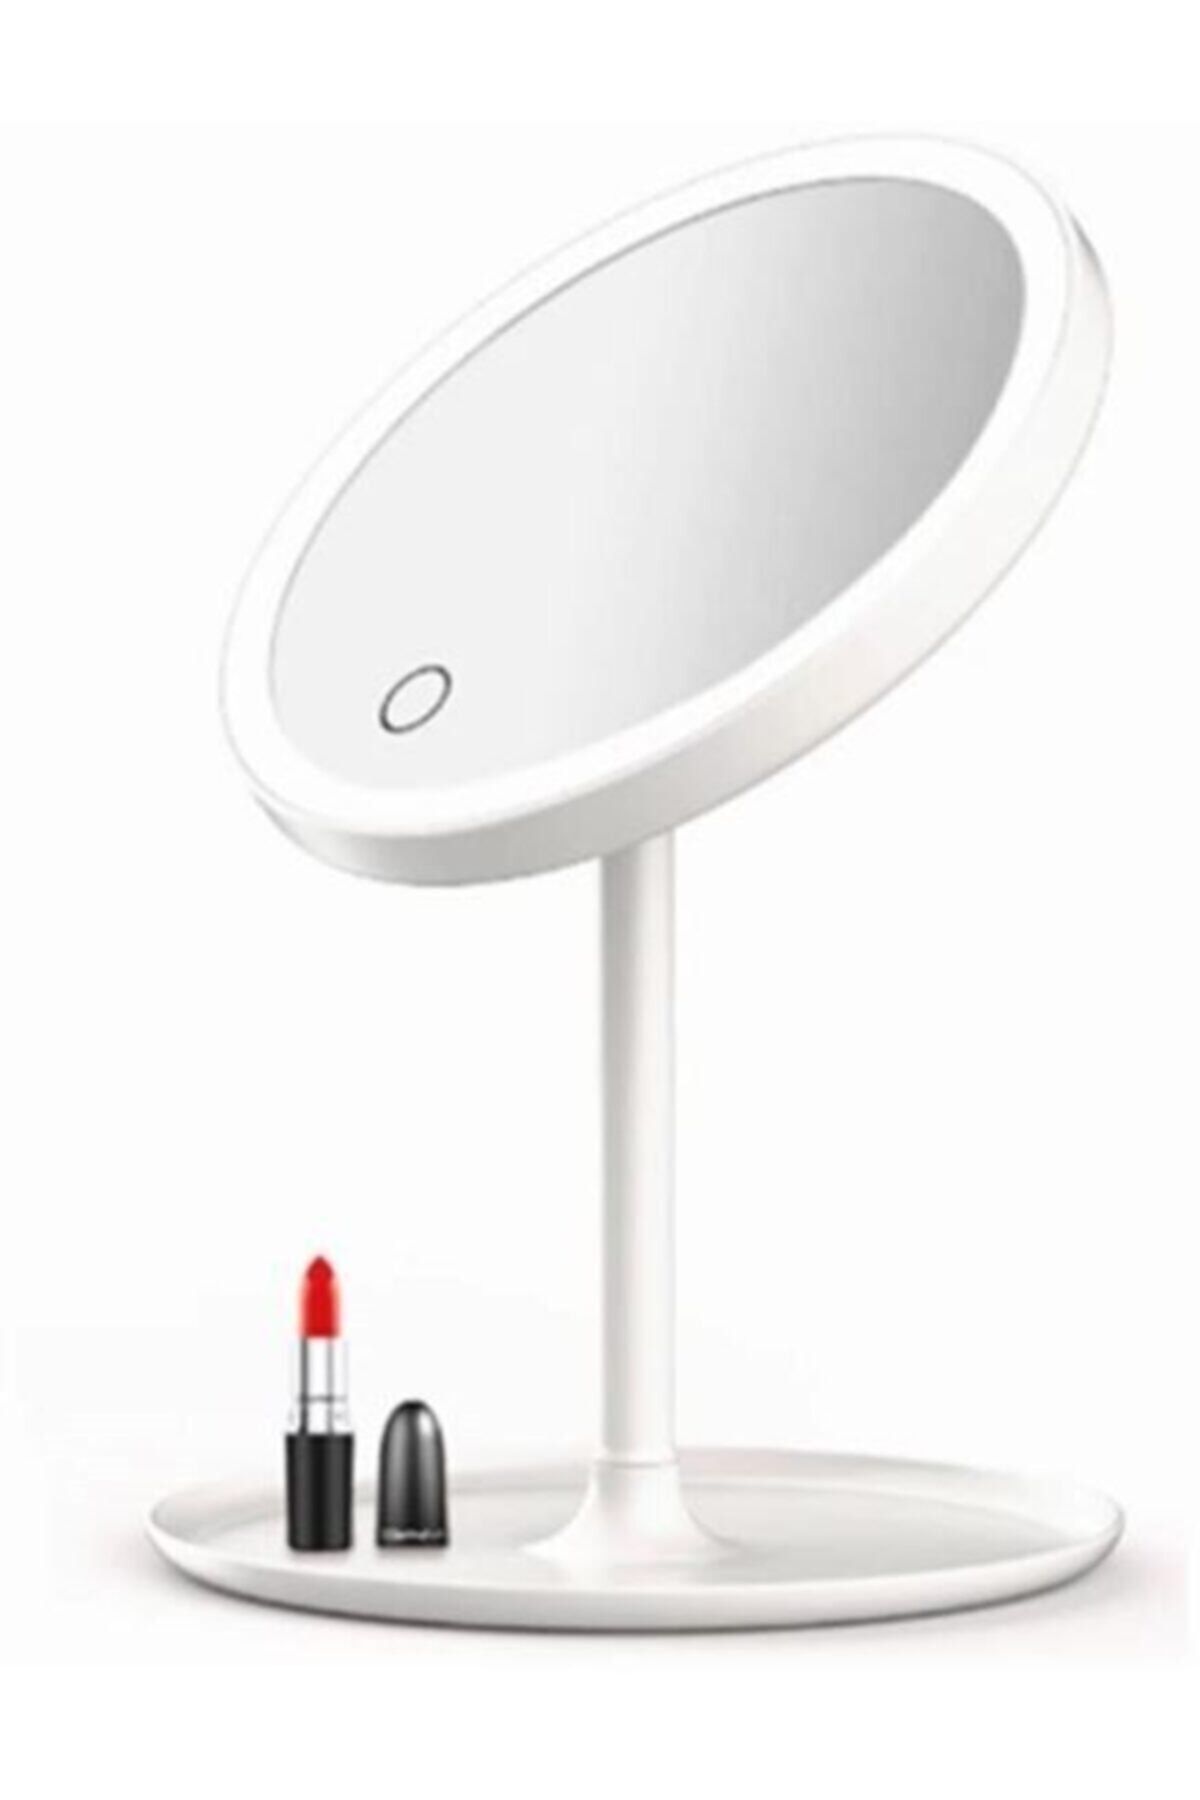 Raicon Dokunmatik 3 Kademeli Led Işıklı Usb Şarjlı Yuvarlak Masa Üstü Makyaj Aynası